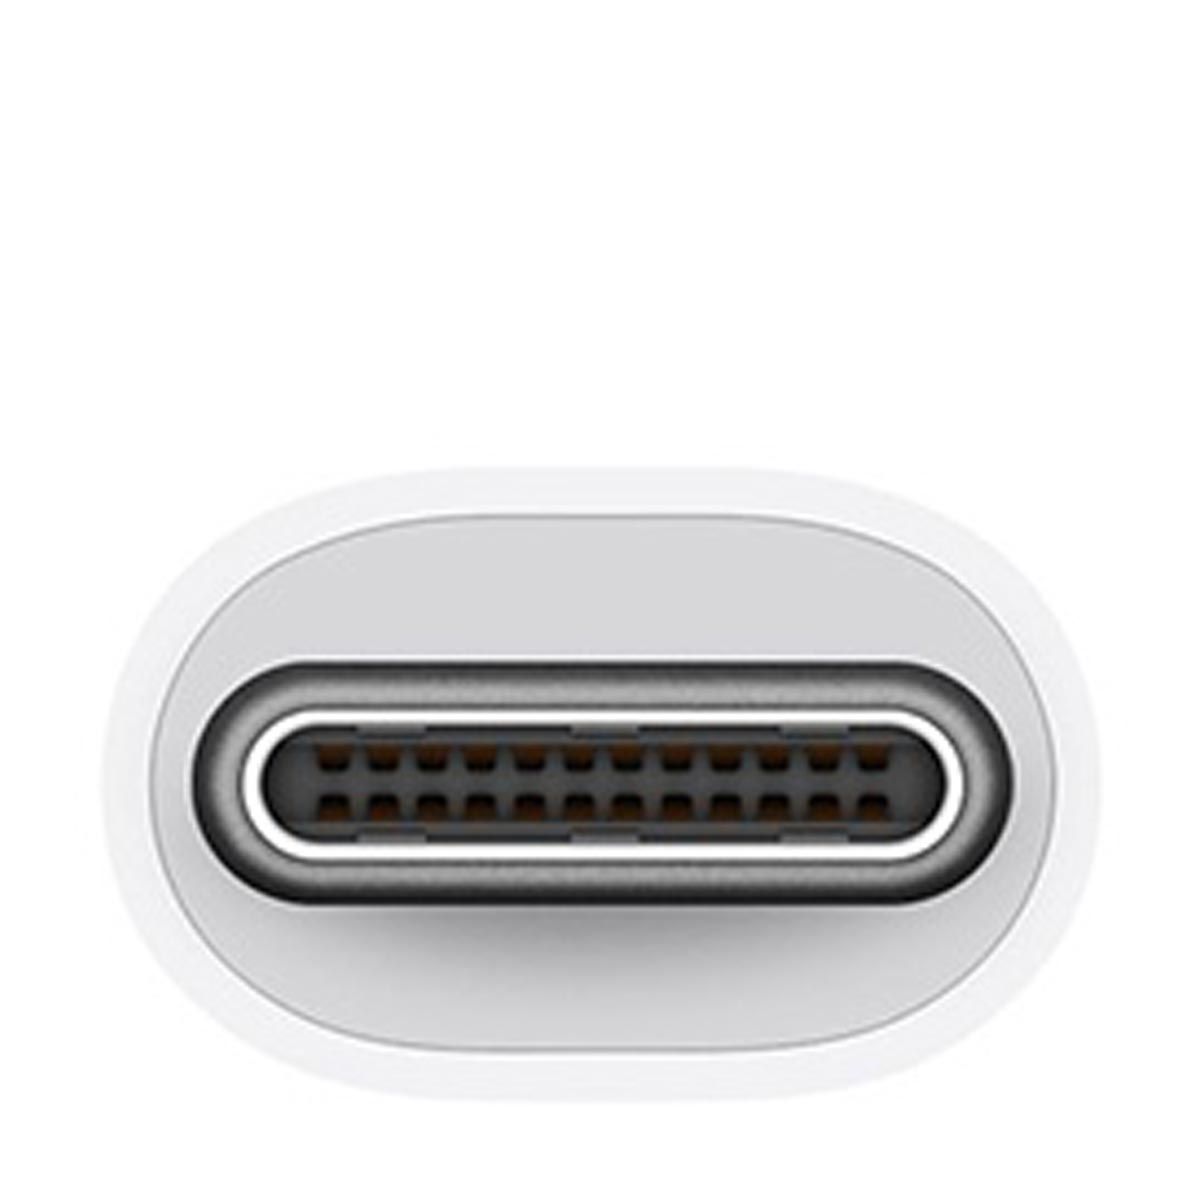 Buy Apple USB-C Digital AV Multiport Adapter Online or In Store